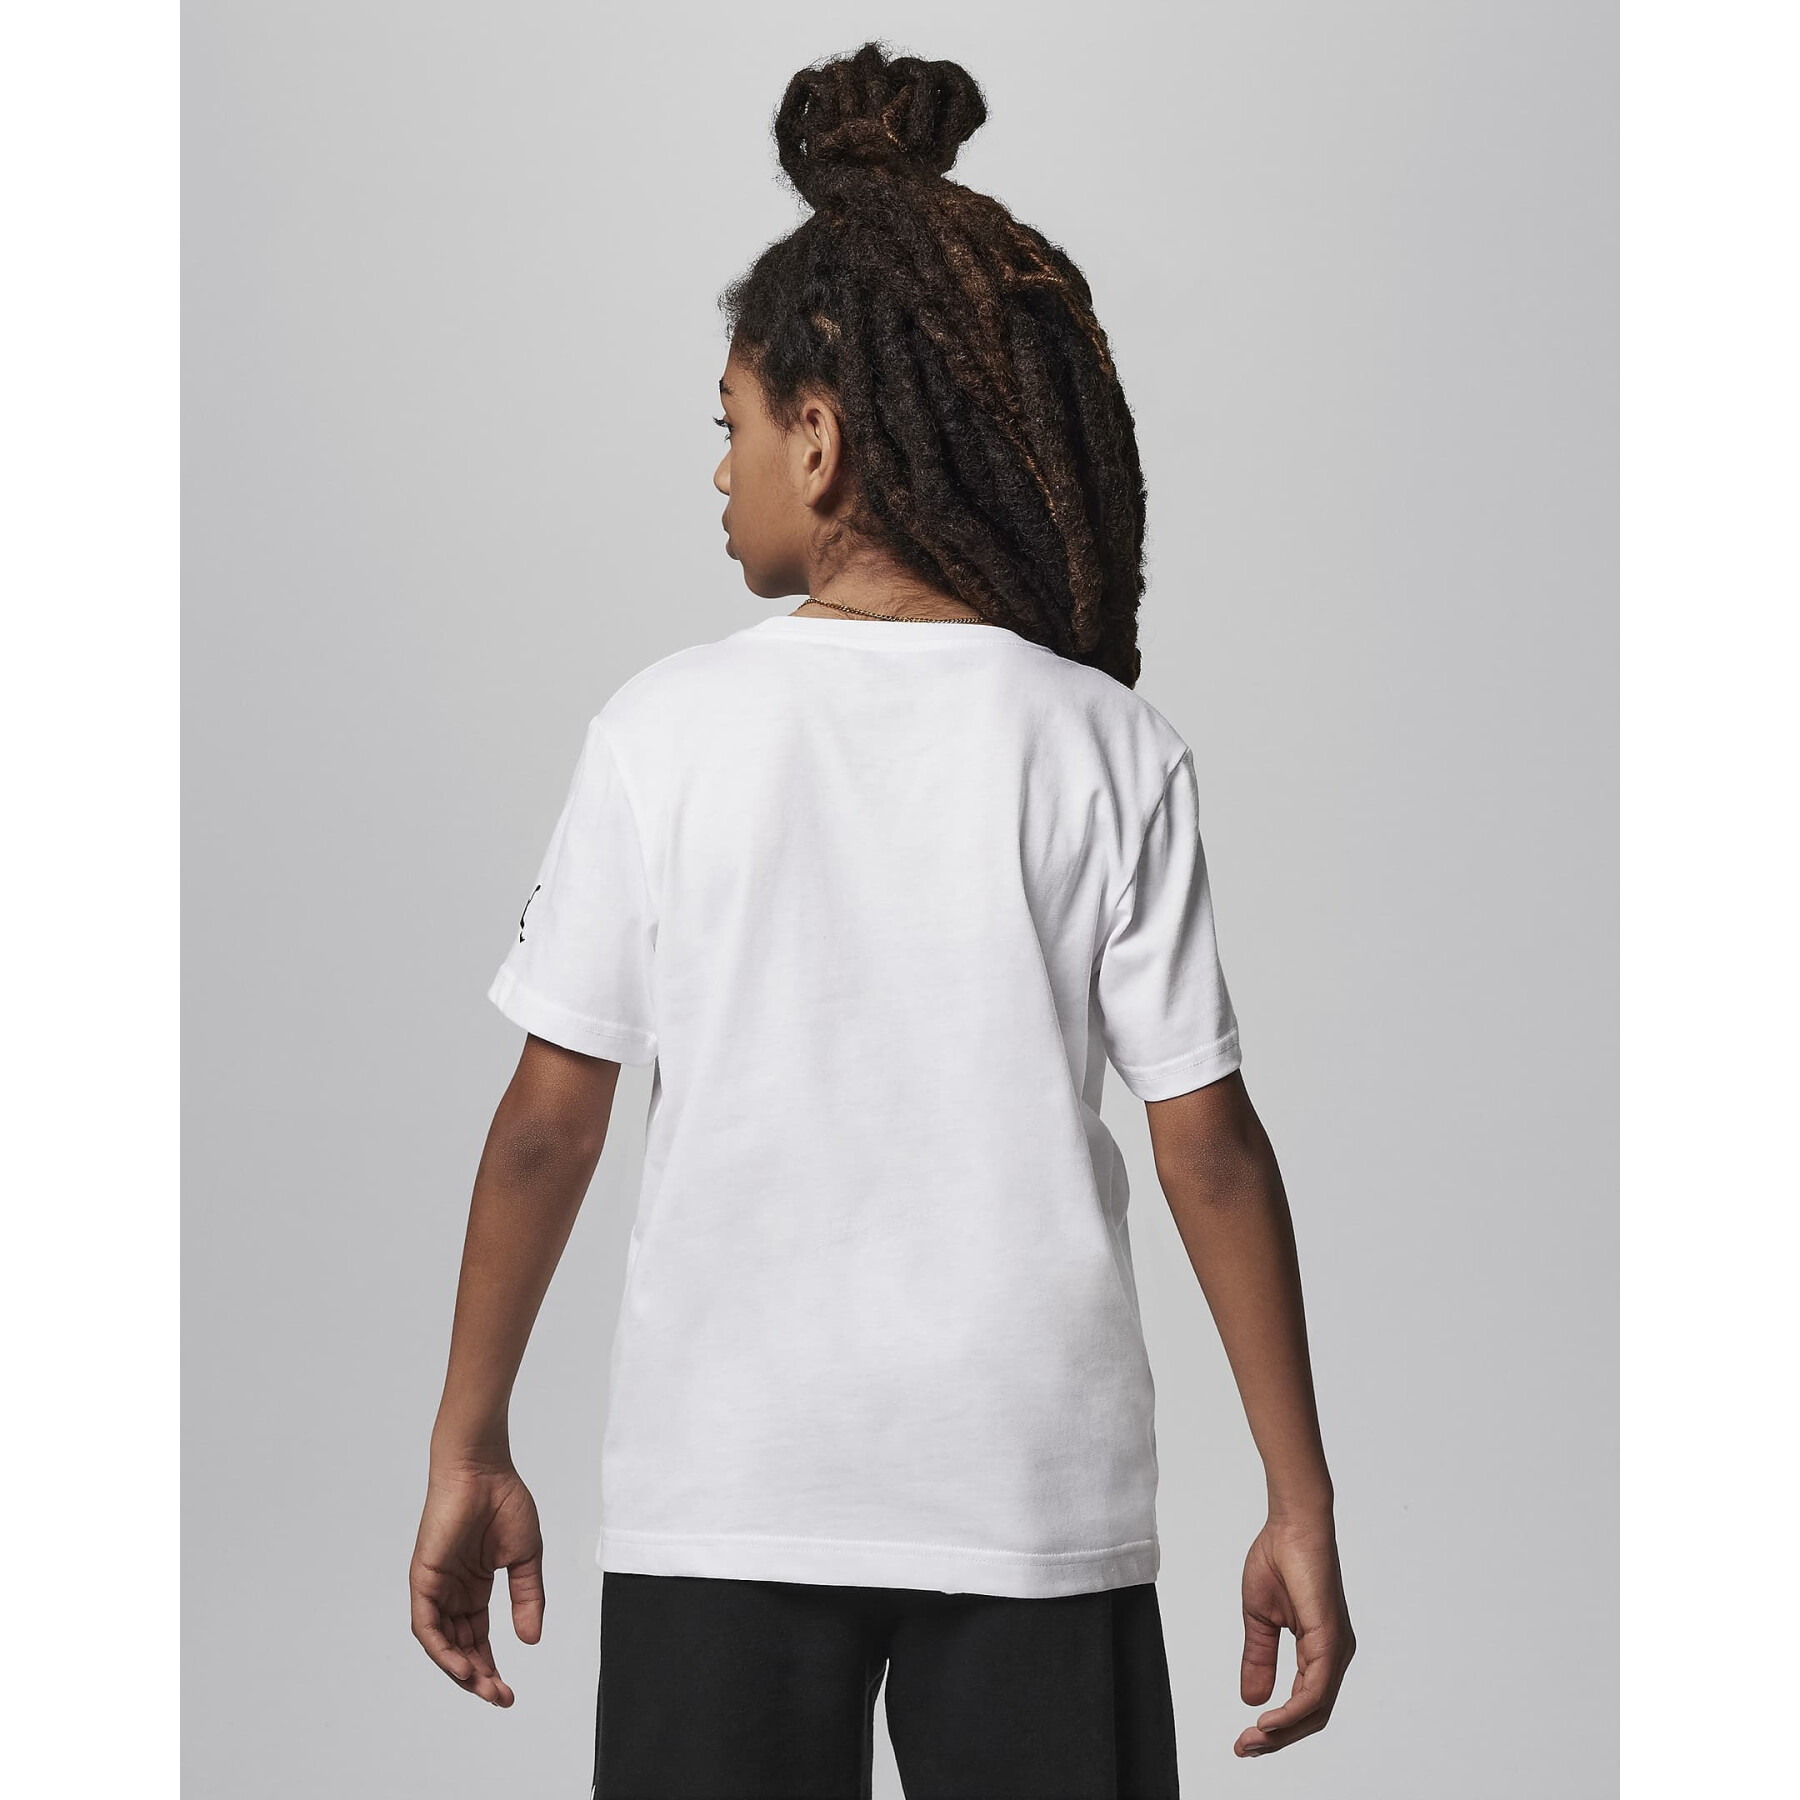 T-shirt per bambini Jordan Watercolor Jumpman